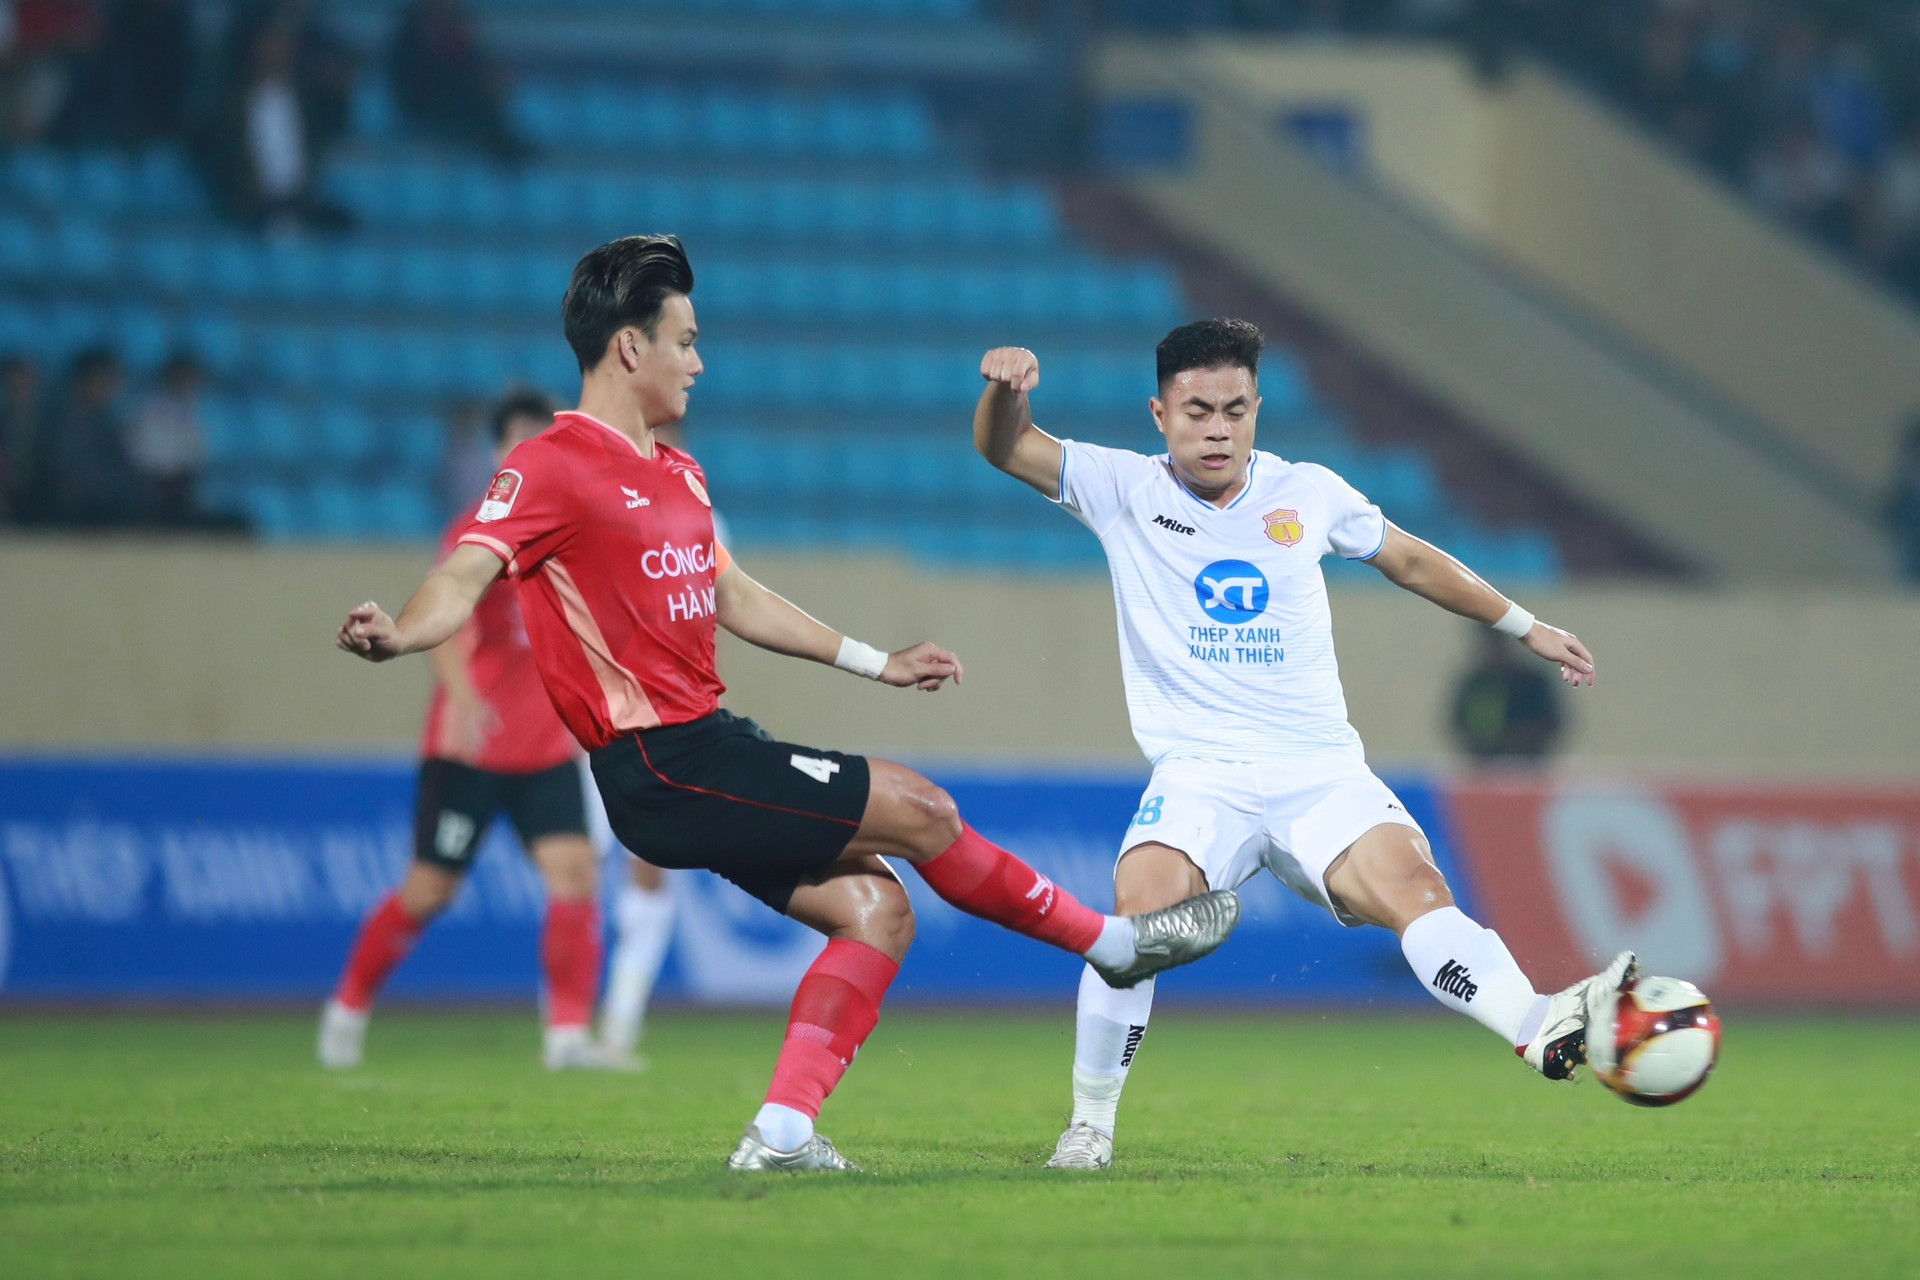 HLV Gong Oh Kyun xô xát với cầu thủ Nam Định ngày Quang Hải ghi bàn - 5